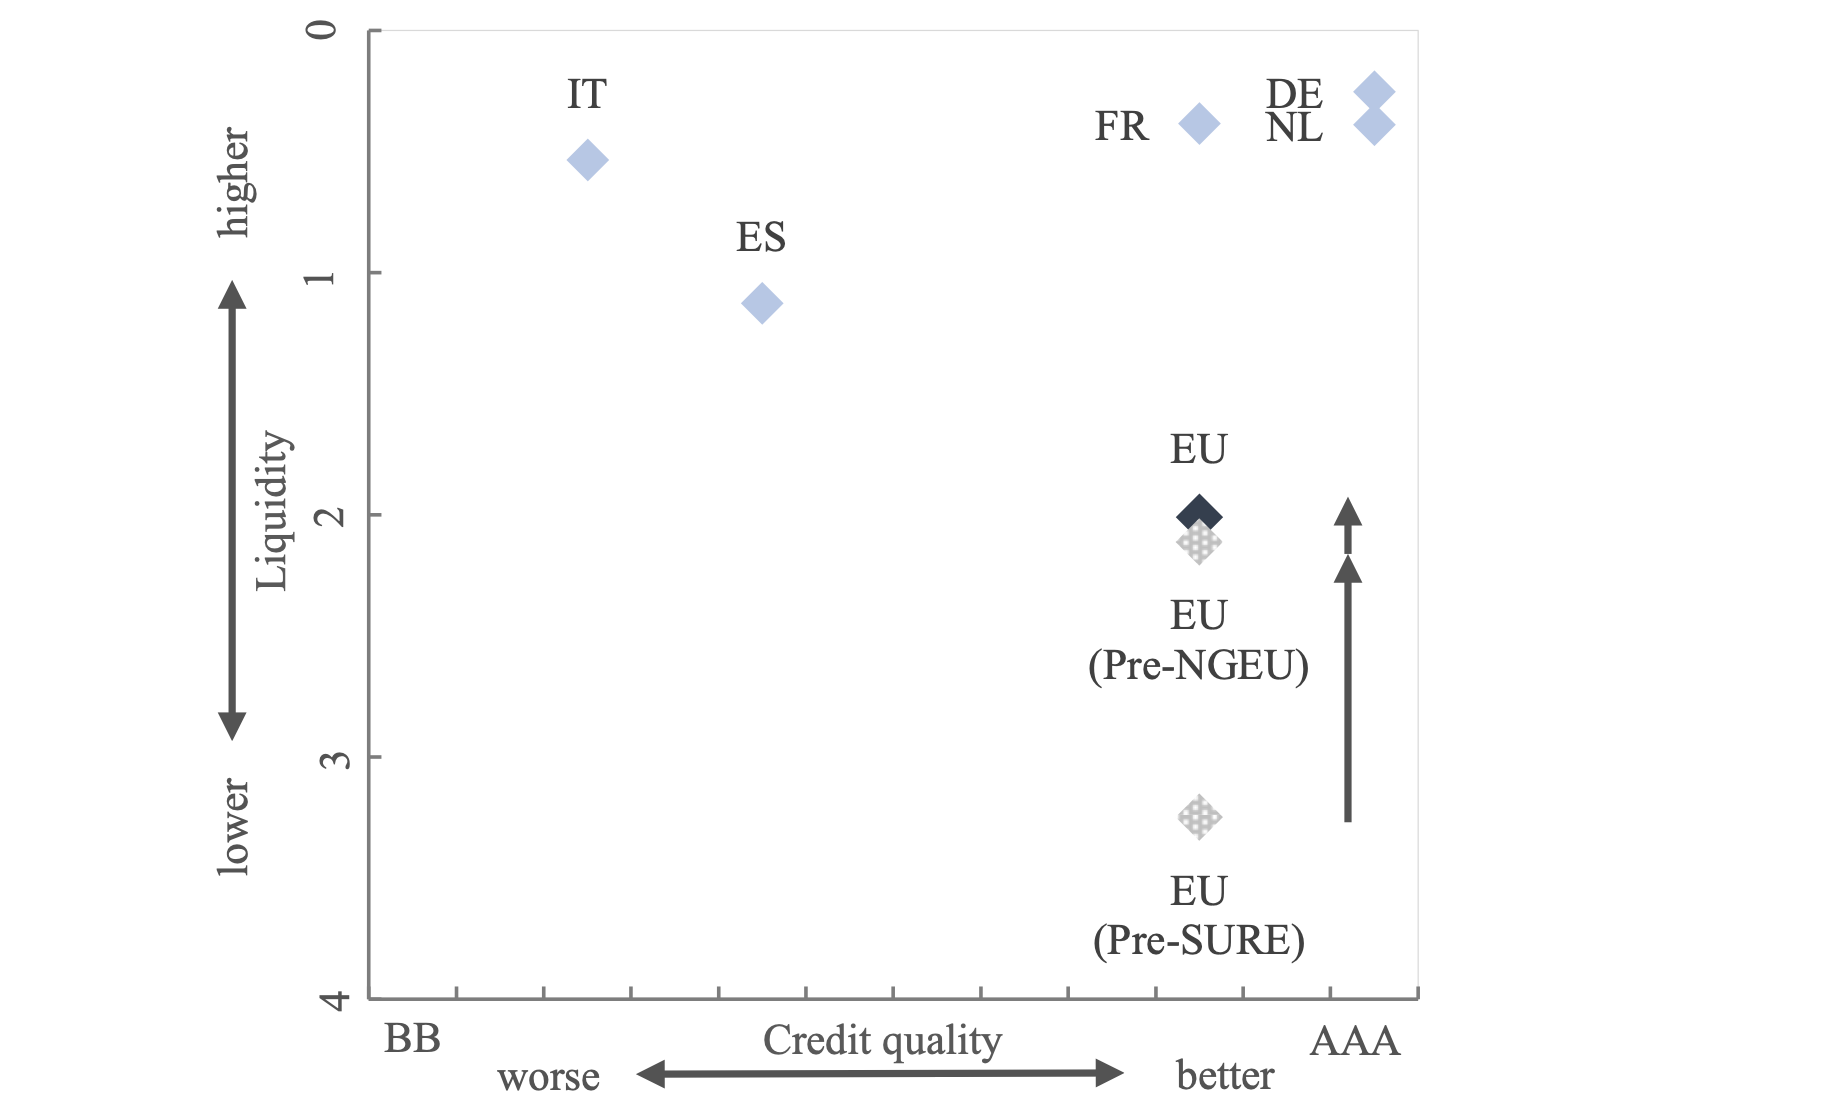 Figure 1 Credit risk and liquidity indicators for EU bonds